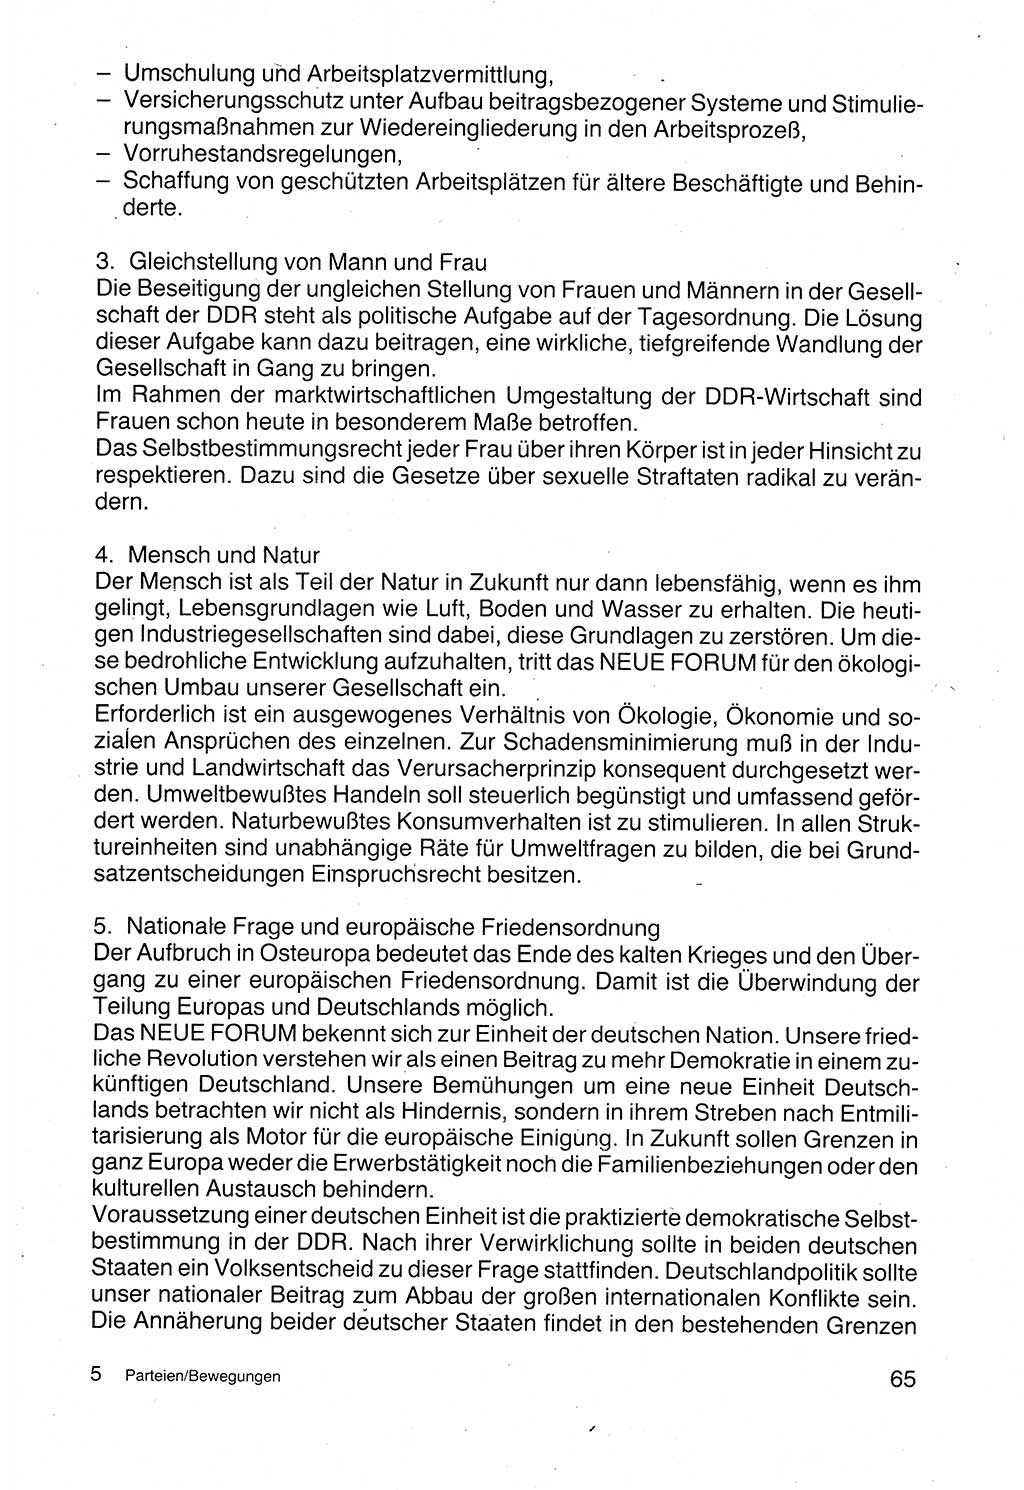 Politische Parteien und Bewegungen der DDR (Deutsche Demokratische Republik) über sich selbst 1990, Seite 65 (Pol. Part. Bew. DDR 1990, S. 65)